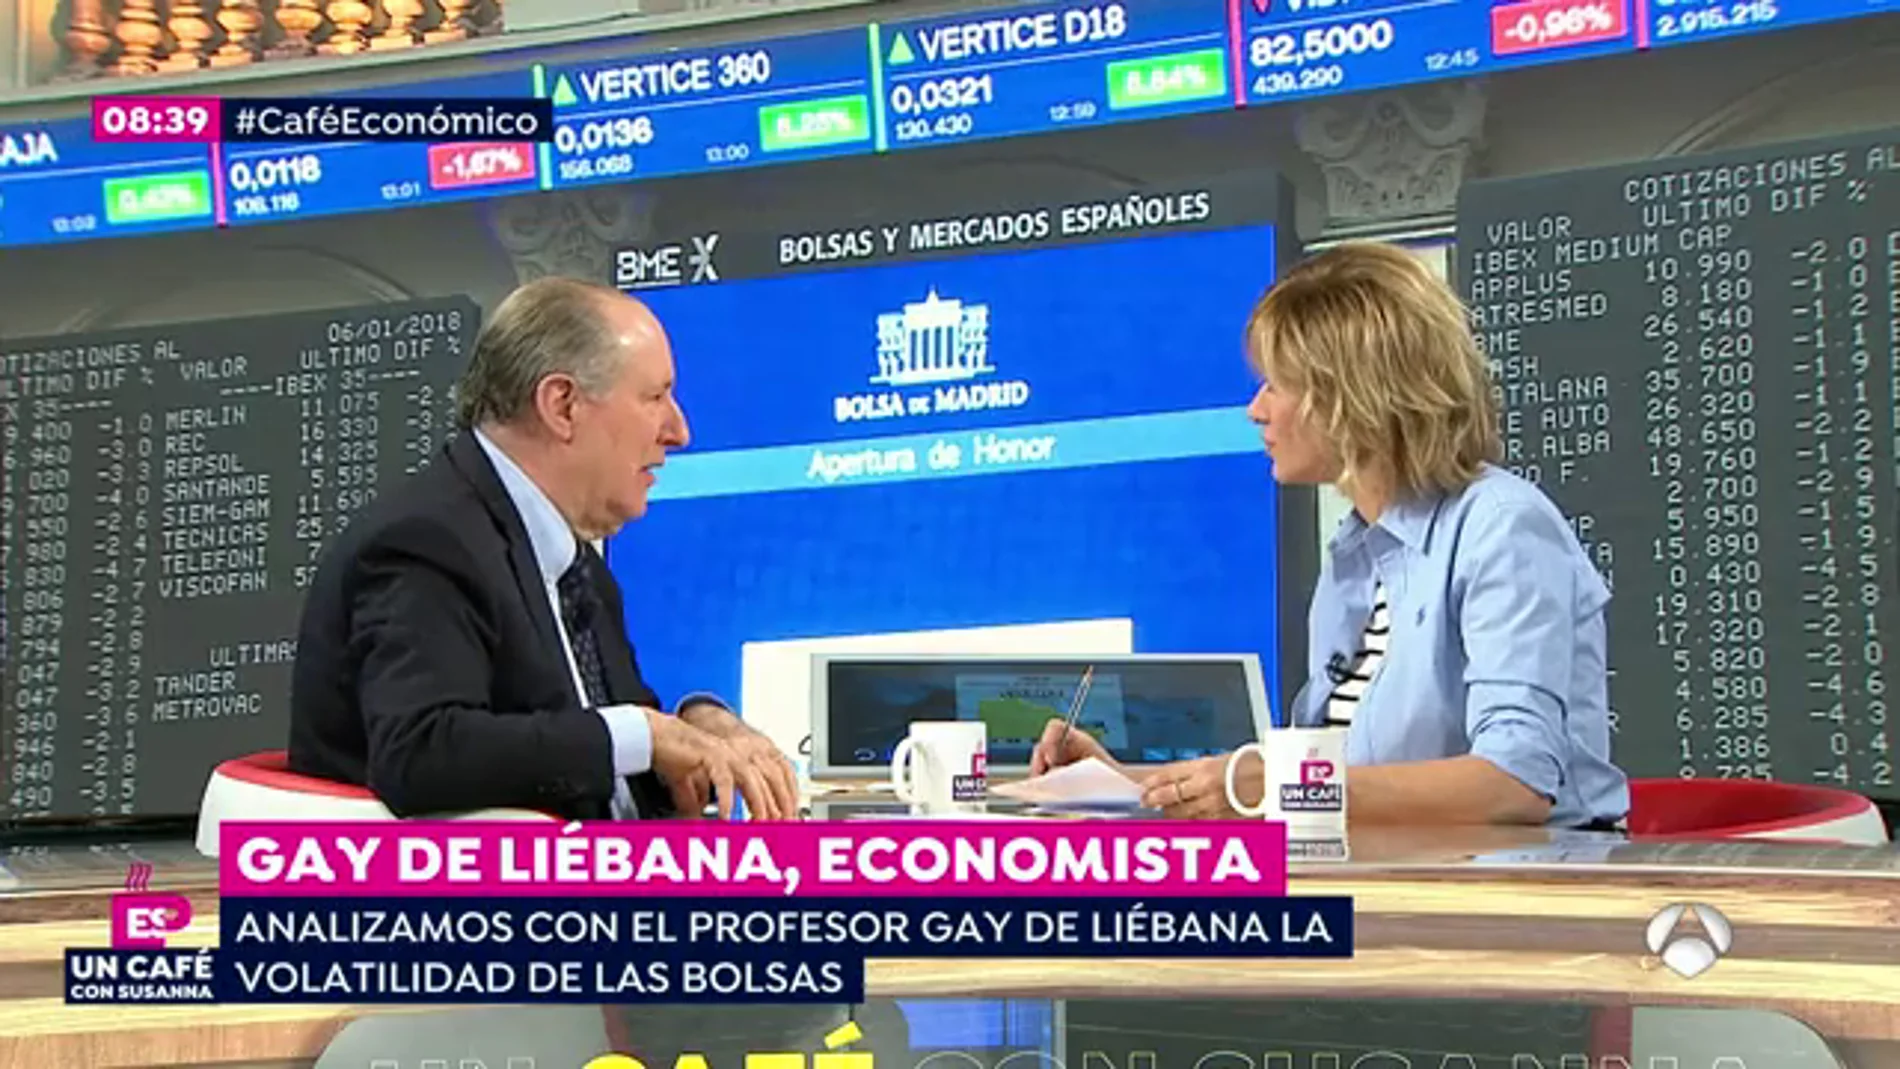  José María Gay de Liébana: "Si endeudarse era barato, a partir de ahora será un poco más caro"